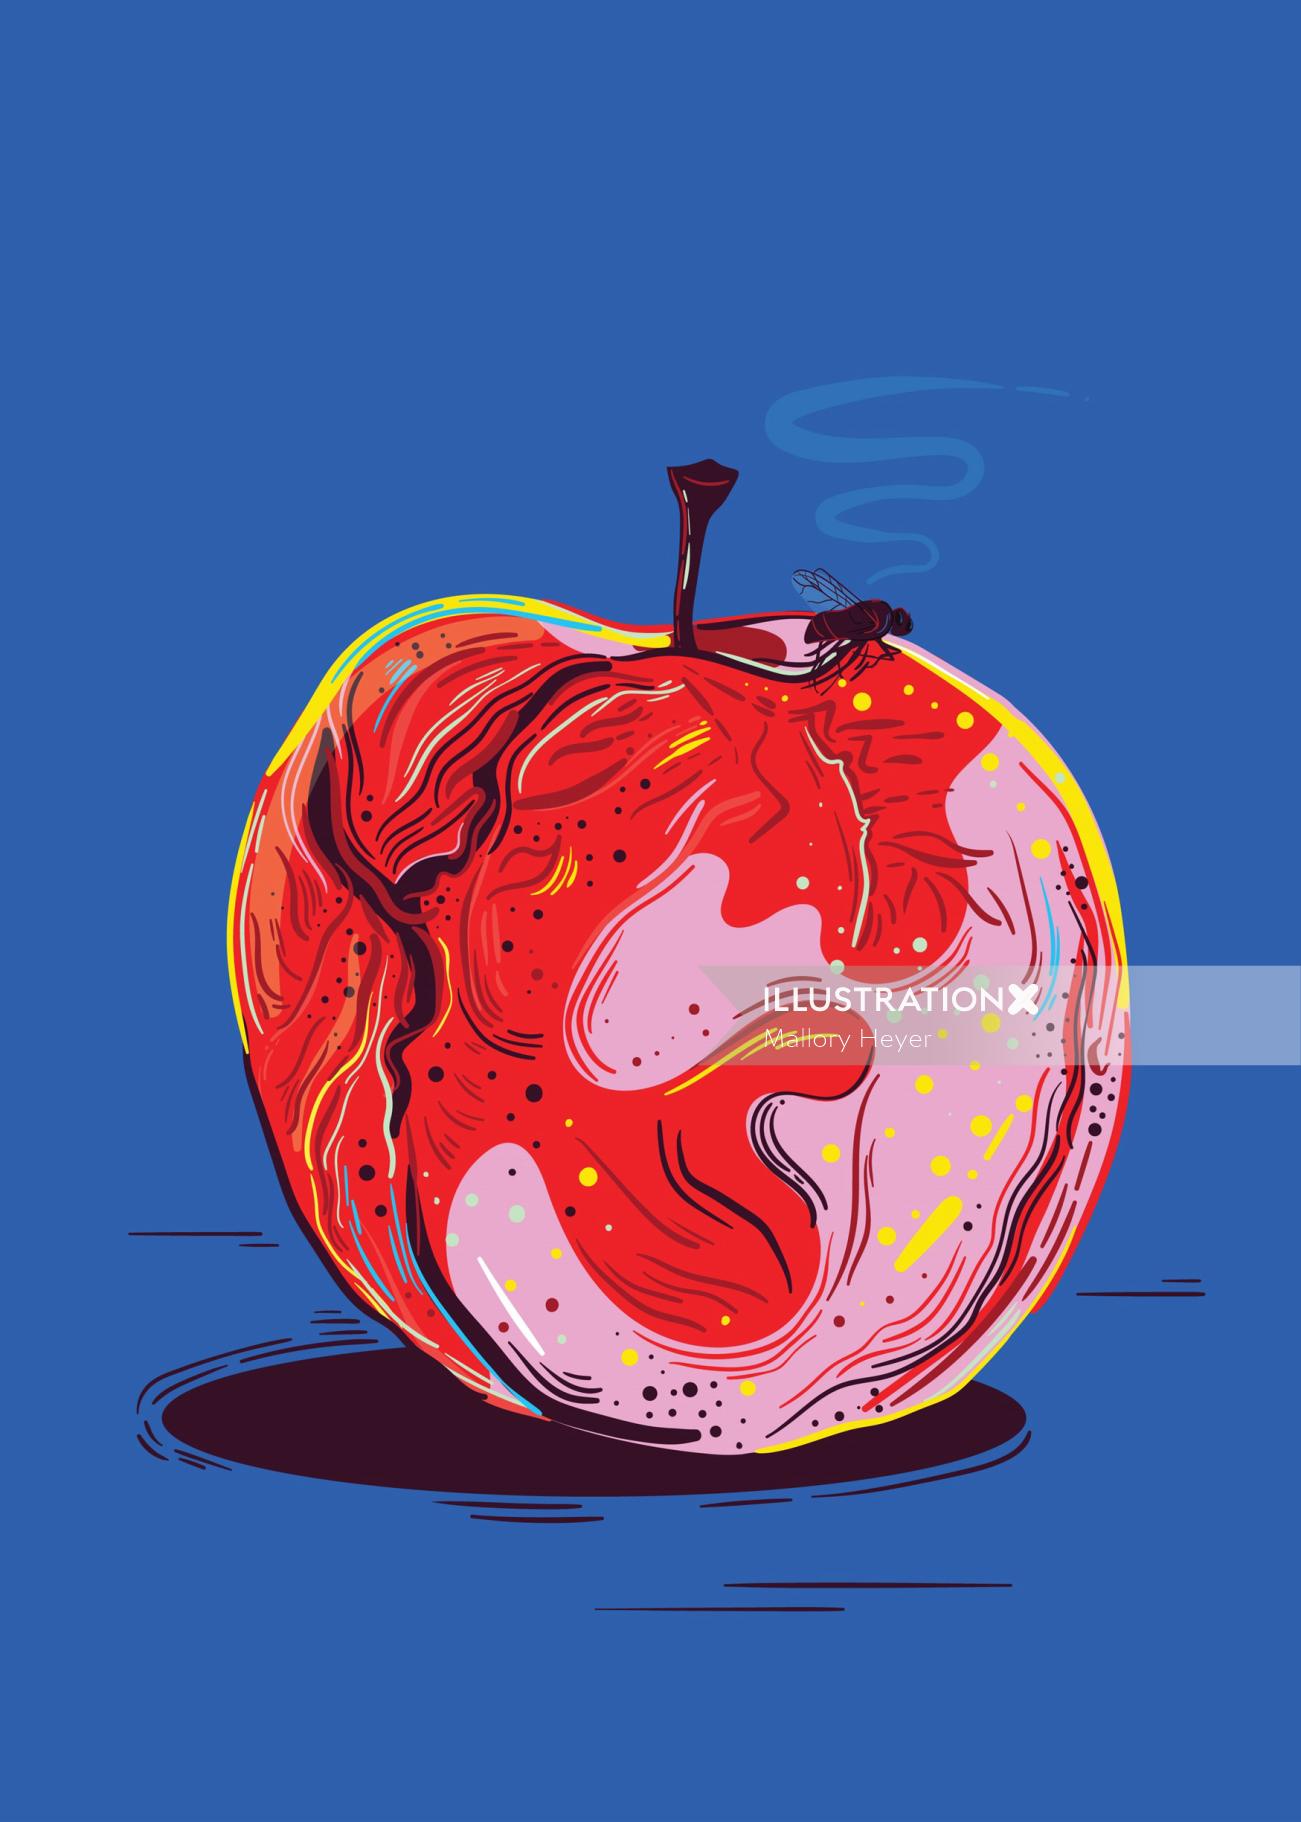 ConceptualBad apple
